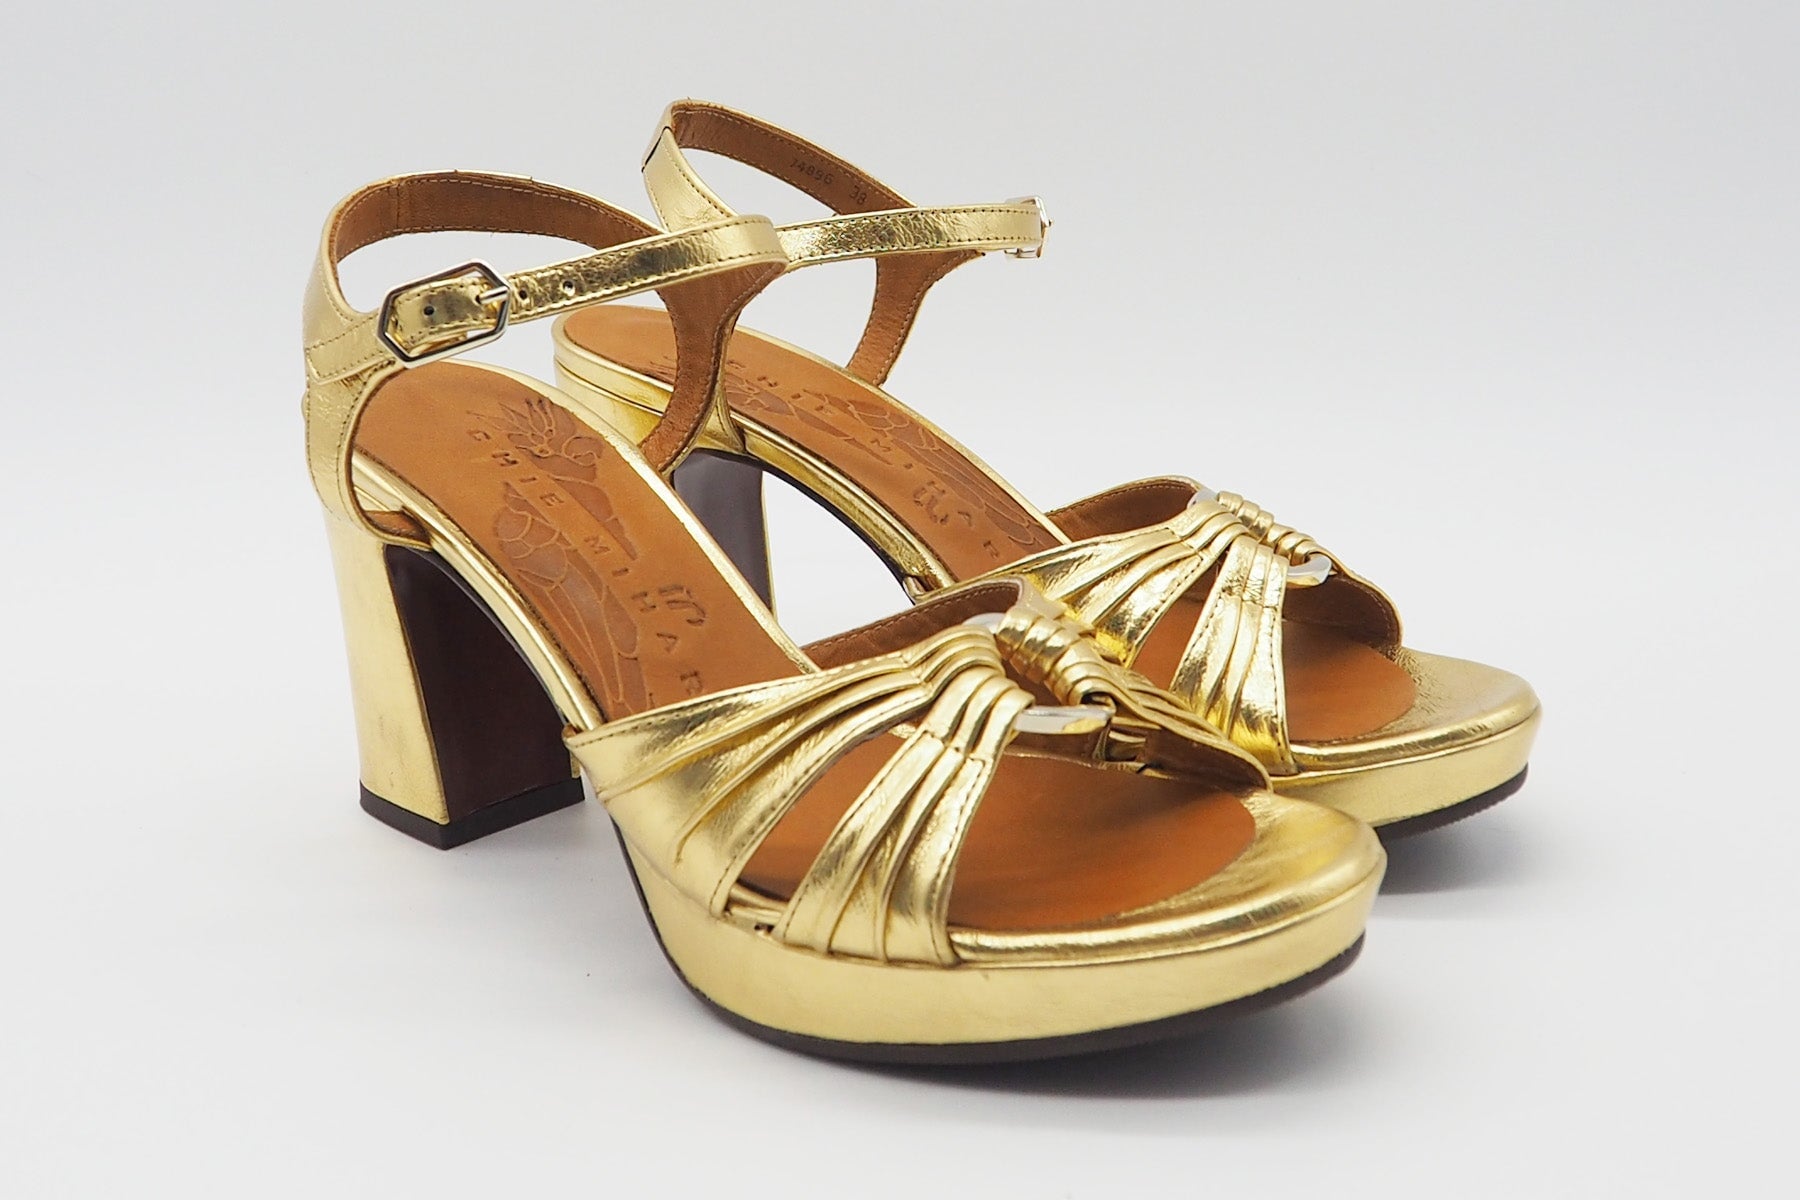 Damen Sandale aus Metallicleder in Gold - Absatz 8,5cm Damen Sandalen Chie Mihara 